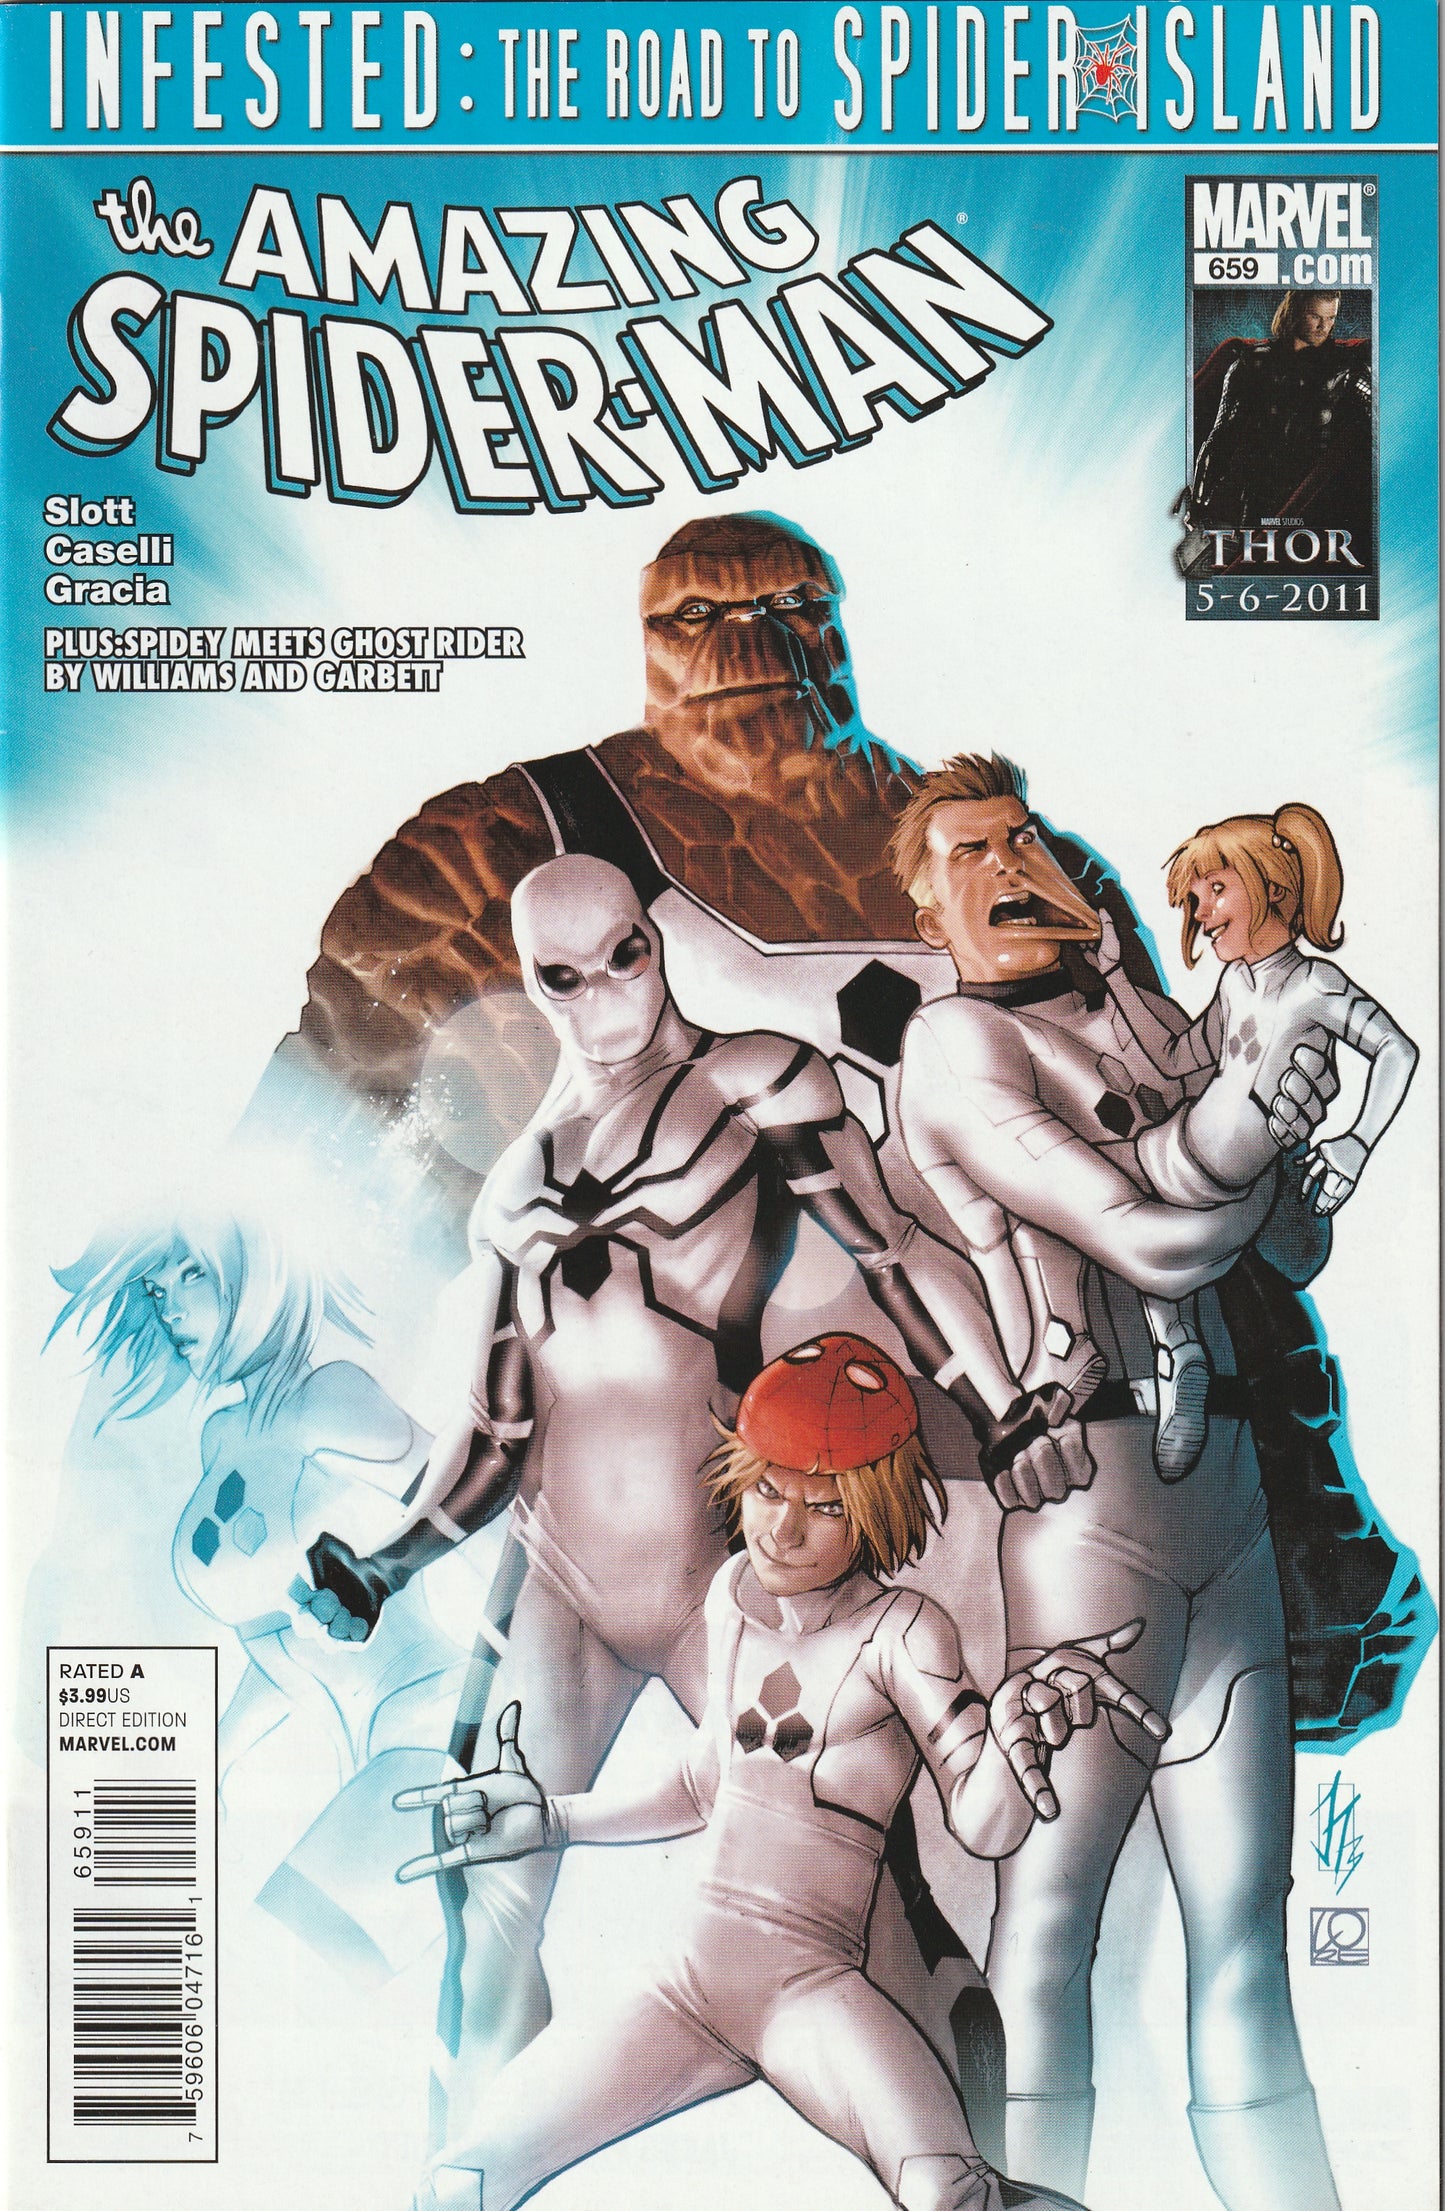 Amazing Spider-Man #659 (2011) - Road to Spider-Island